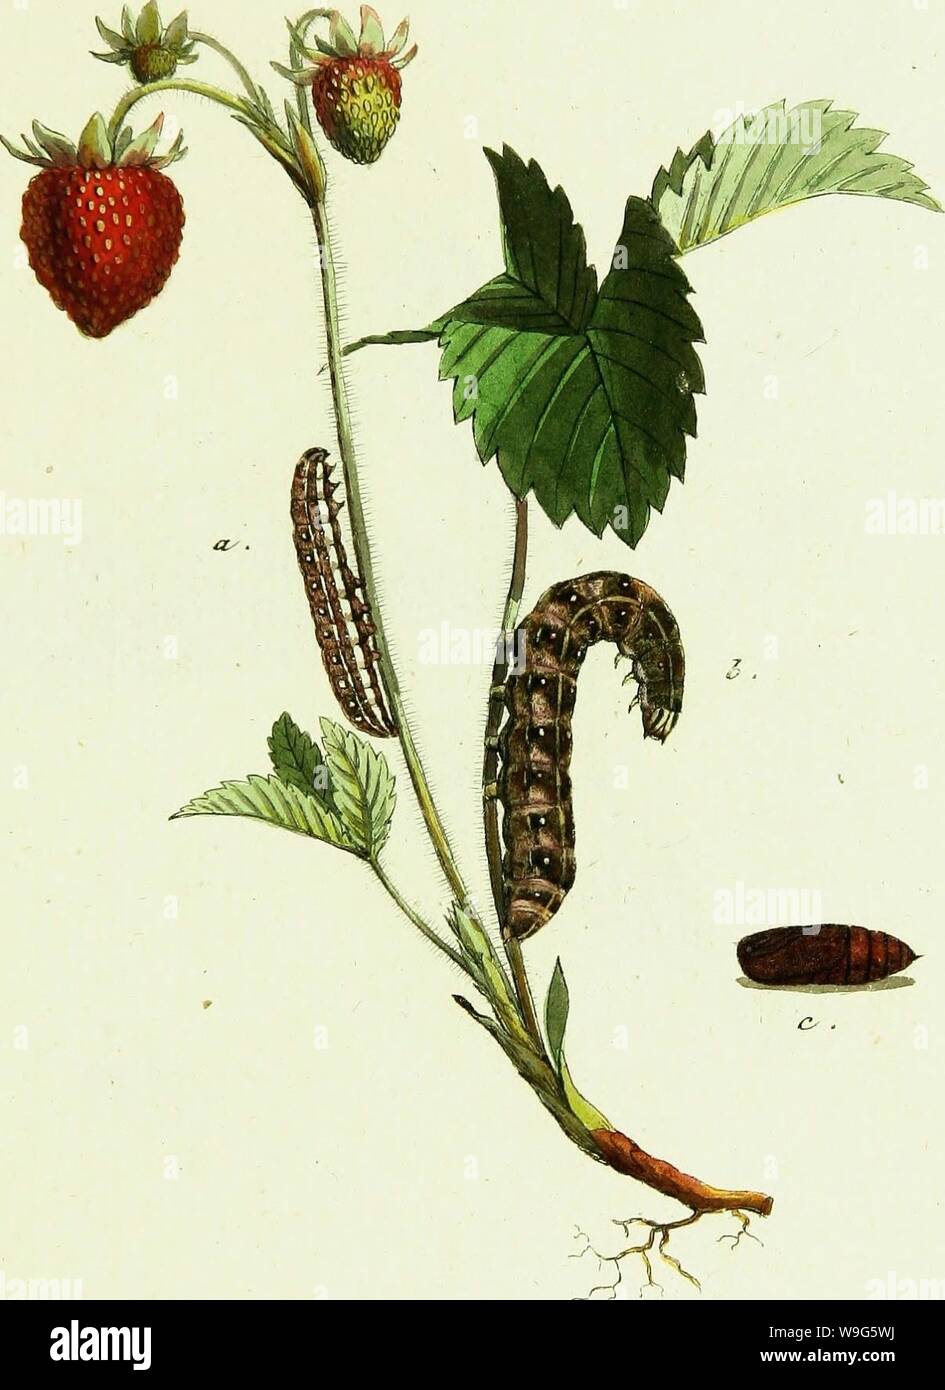 Archiv Bild von Seite 118 / europäischer Schmetterlinge (1806). / Europäischer Schmetterlinge CUbiodiversity 1742385-9606 Jahr: 1806 (Jo. JK SQ & £&lt; Zs, JT. - Sseman £ &, G a. 3. o. tf/itiZ'ri&e / Jz. Stockfoto